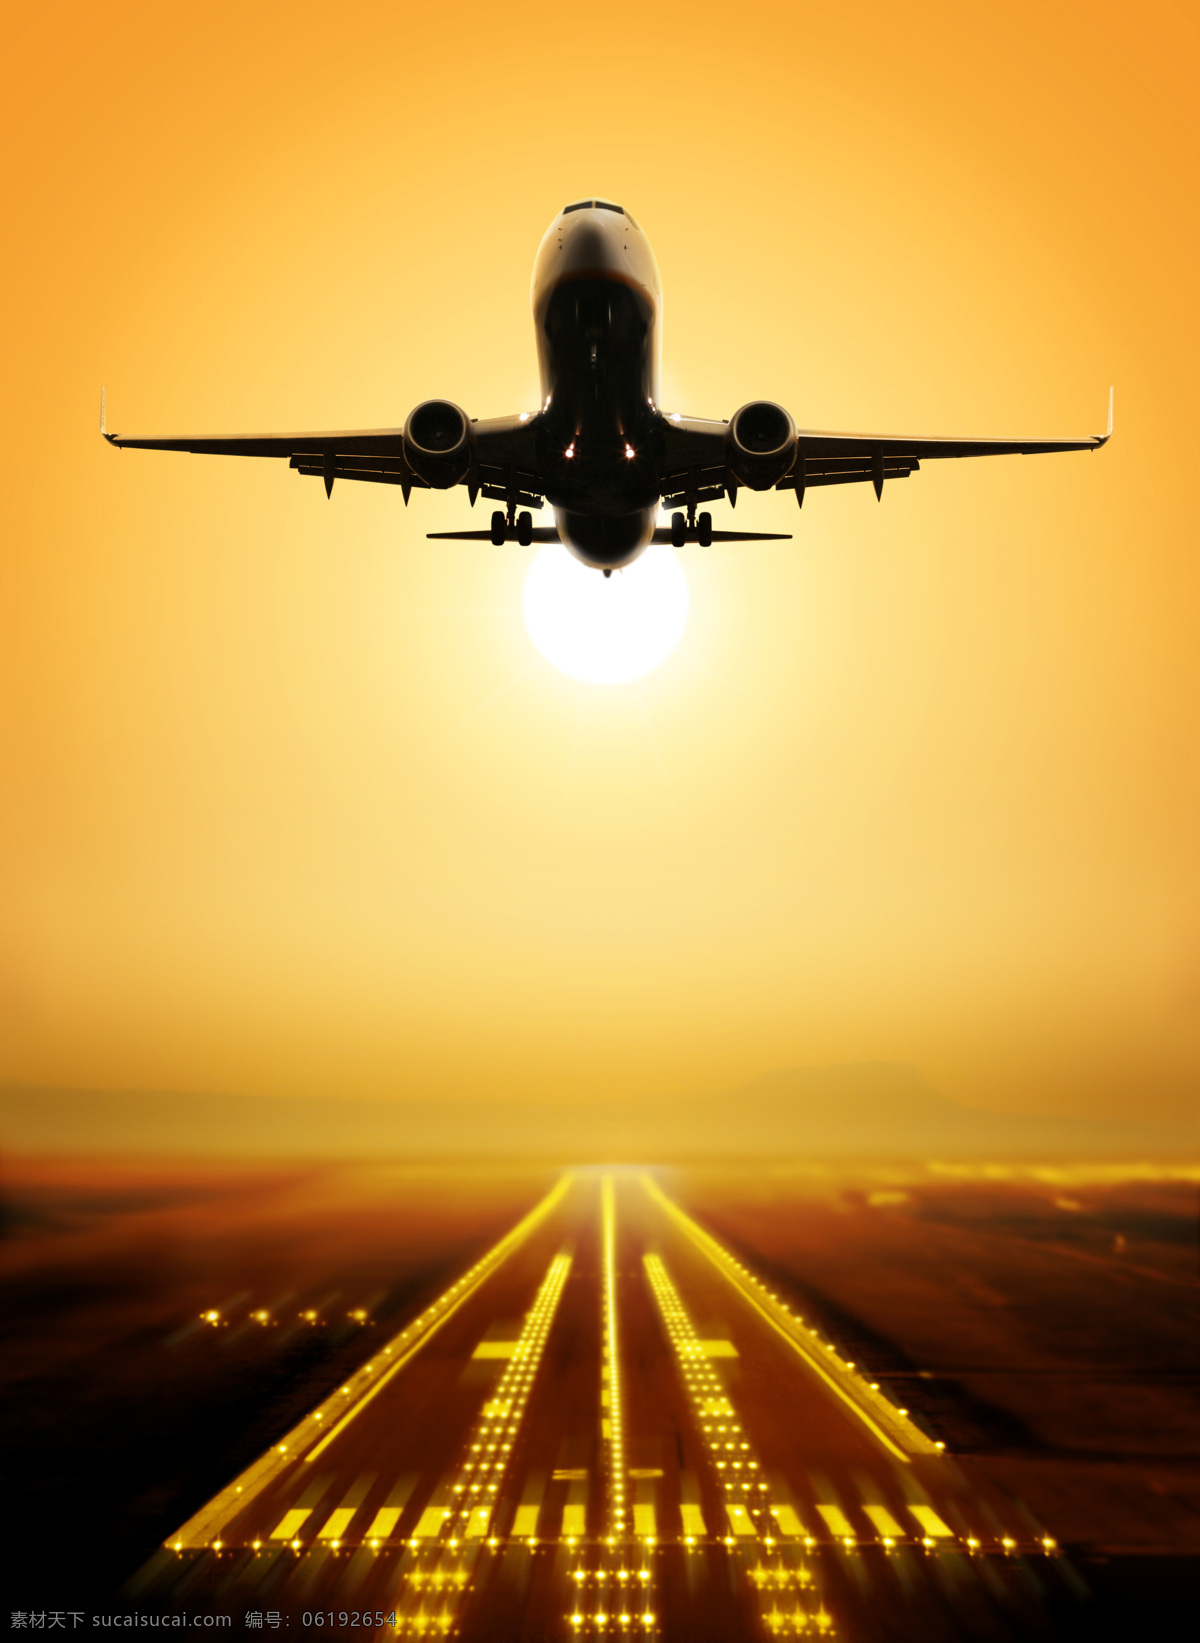 机场 日落 风景摄影 上空 飞机 飞机跑道 日落风景 飞机起飞 天空 航空 交通工具 其他类别 环境家居